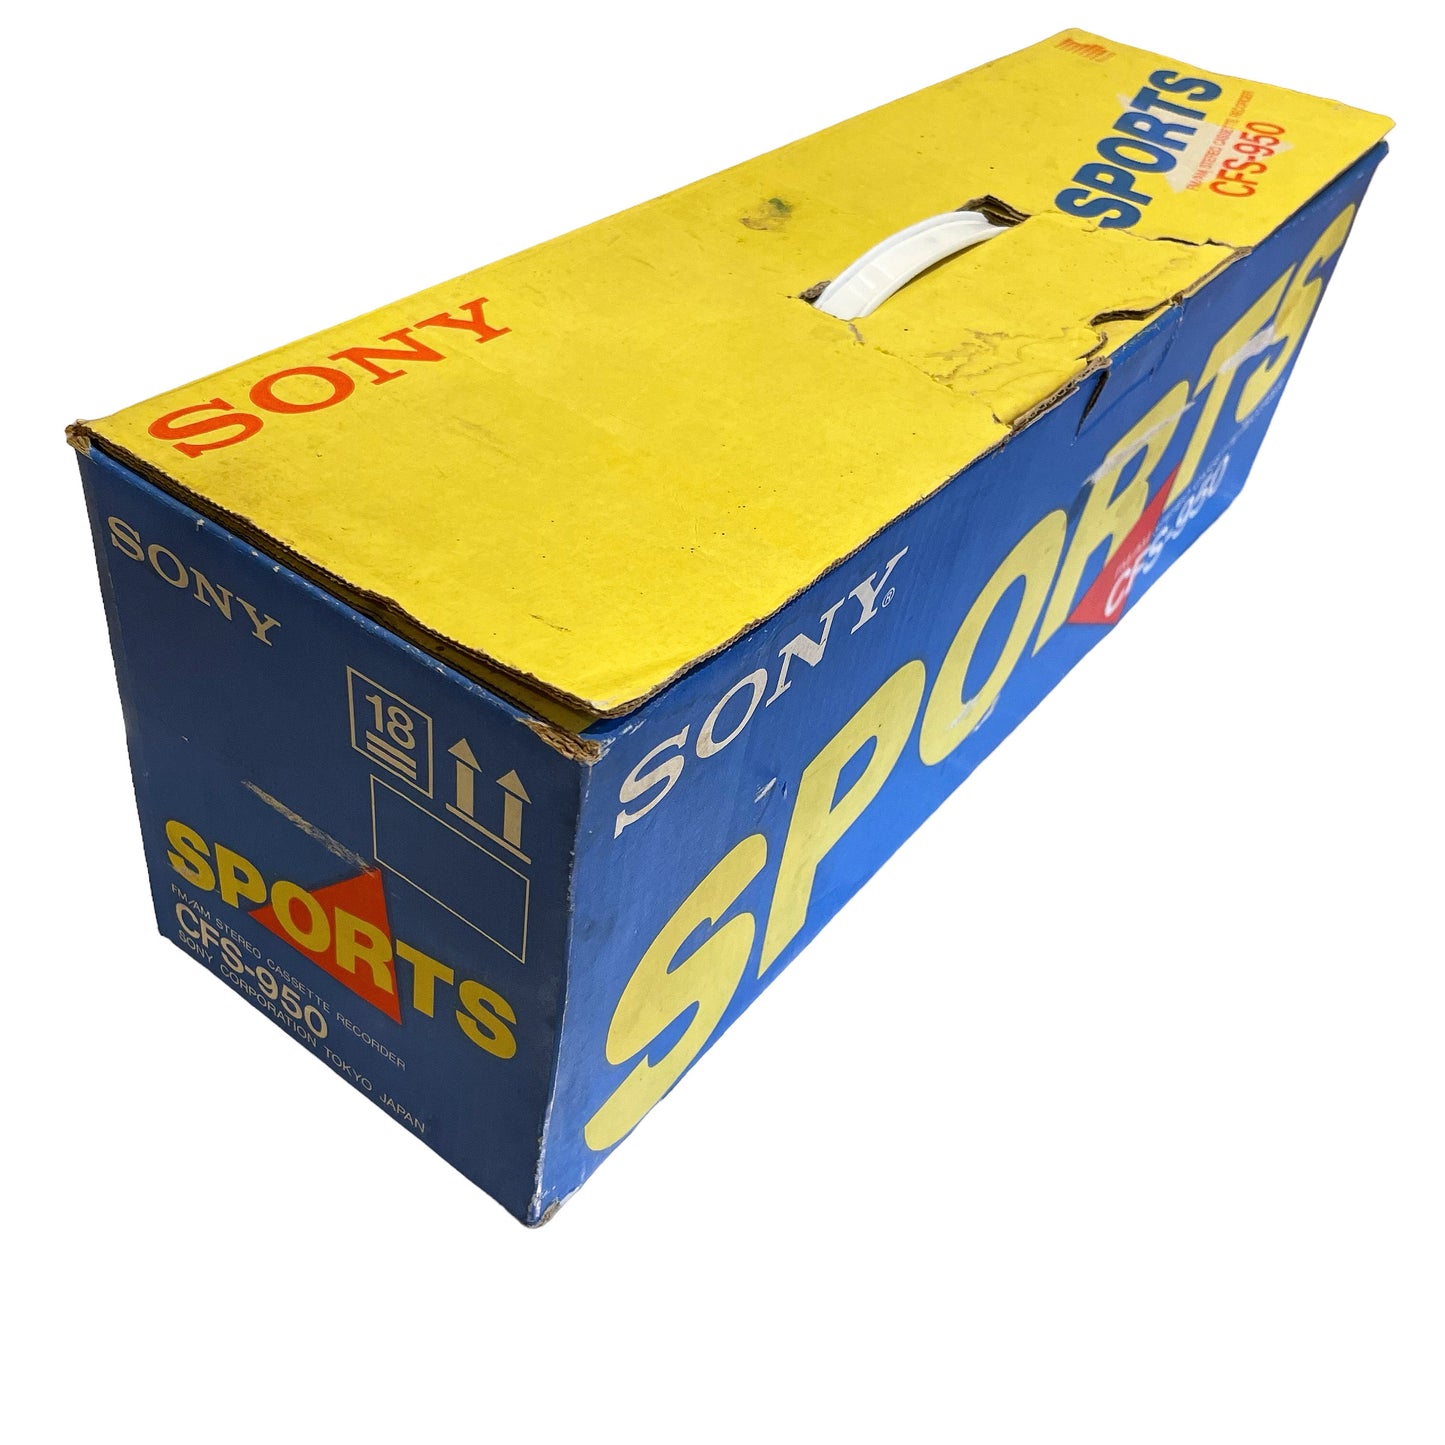 1985 ラジカセ SONY SPORTS ソニースポーツ Boombox CFS-950 IN BOX 可動品 箱付き ヴィンテージ